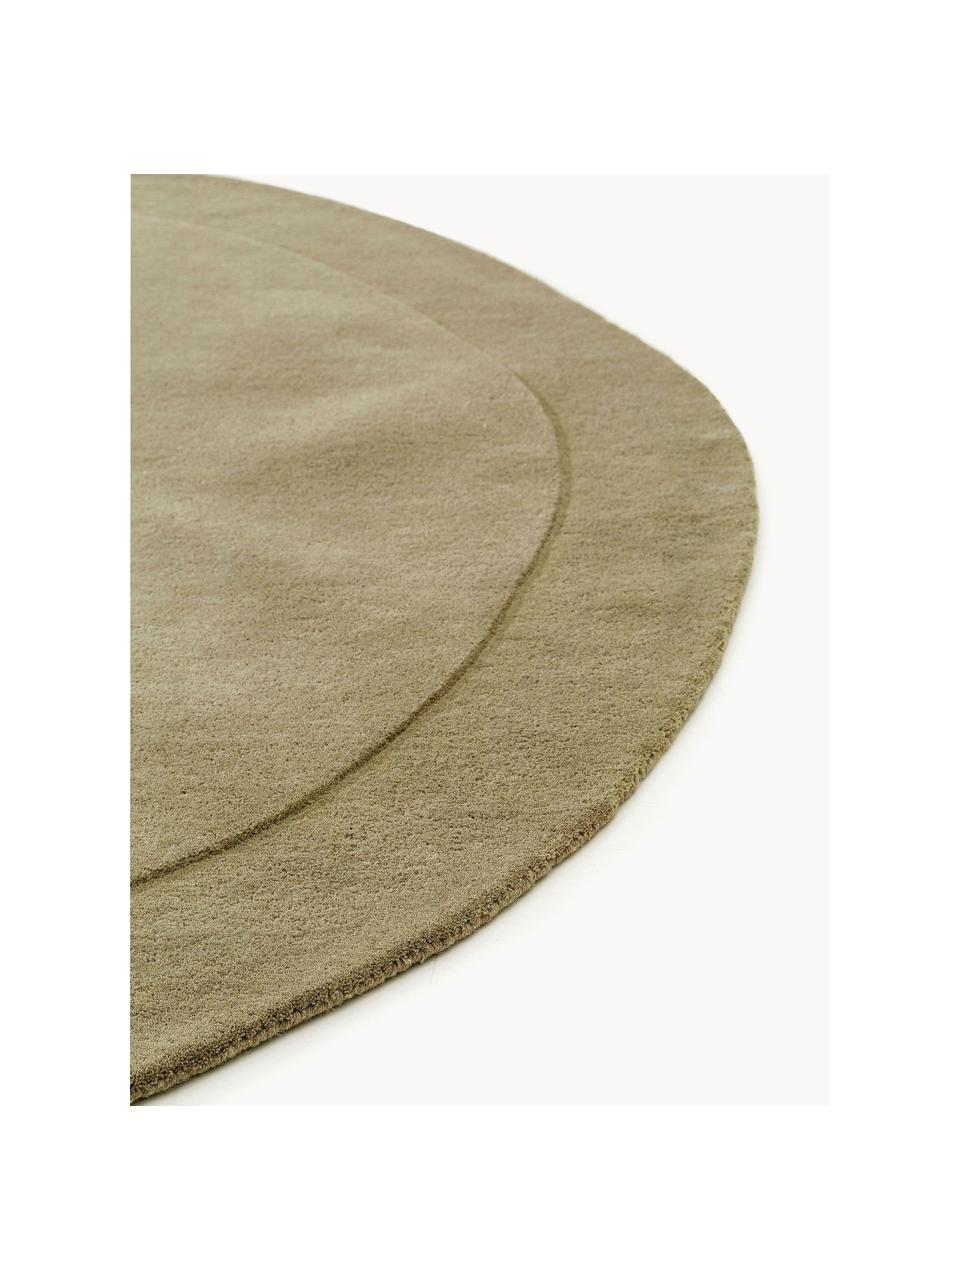 Alfombra artesanal de lana con forma orgánica Shape, 100% lana

Las alfombras de lana se pueden aflojar durante las primeras semanas de uso, la pelusa se reduce con el uso diario., Verde oliva, Ø 200 cm (Tamaño L)